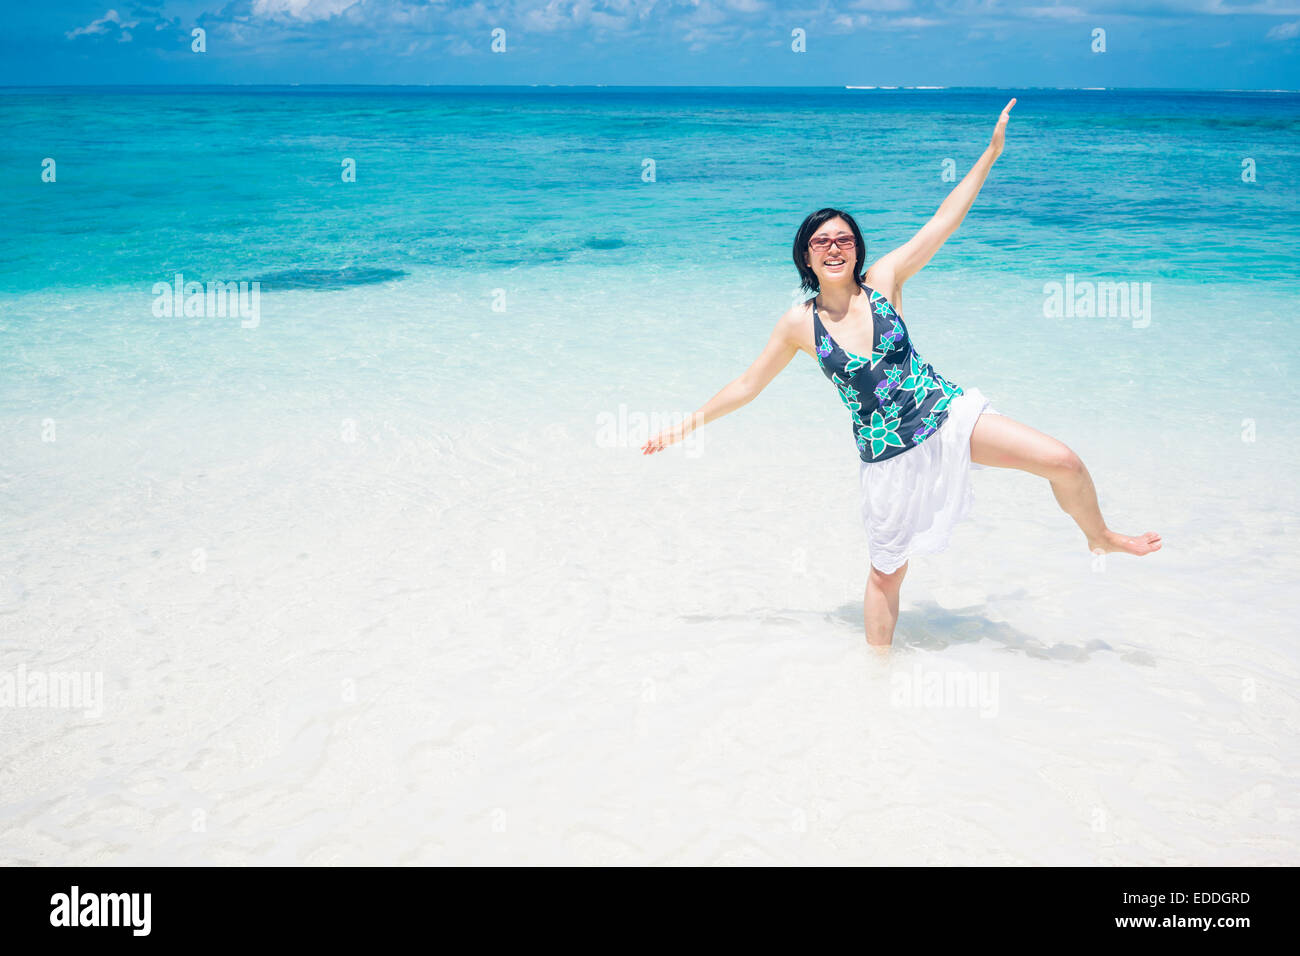 Les Maldives, Ari Atoll, jeune femme debout dans l'eau sur une jambe Banque D'Images